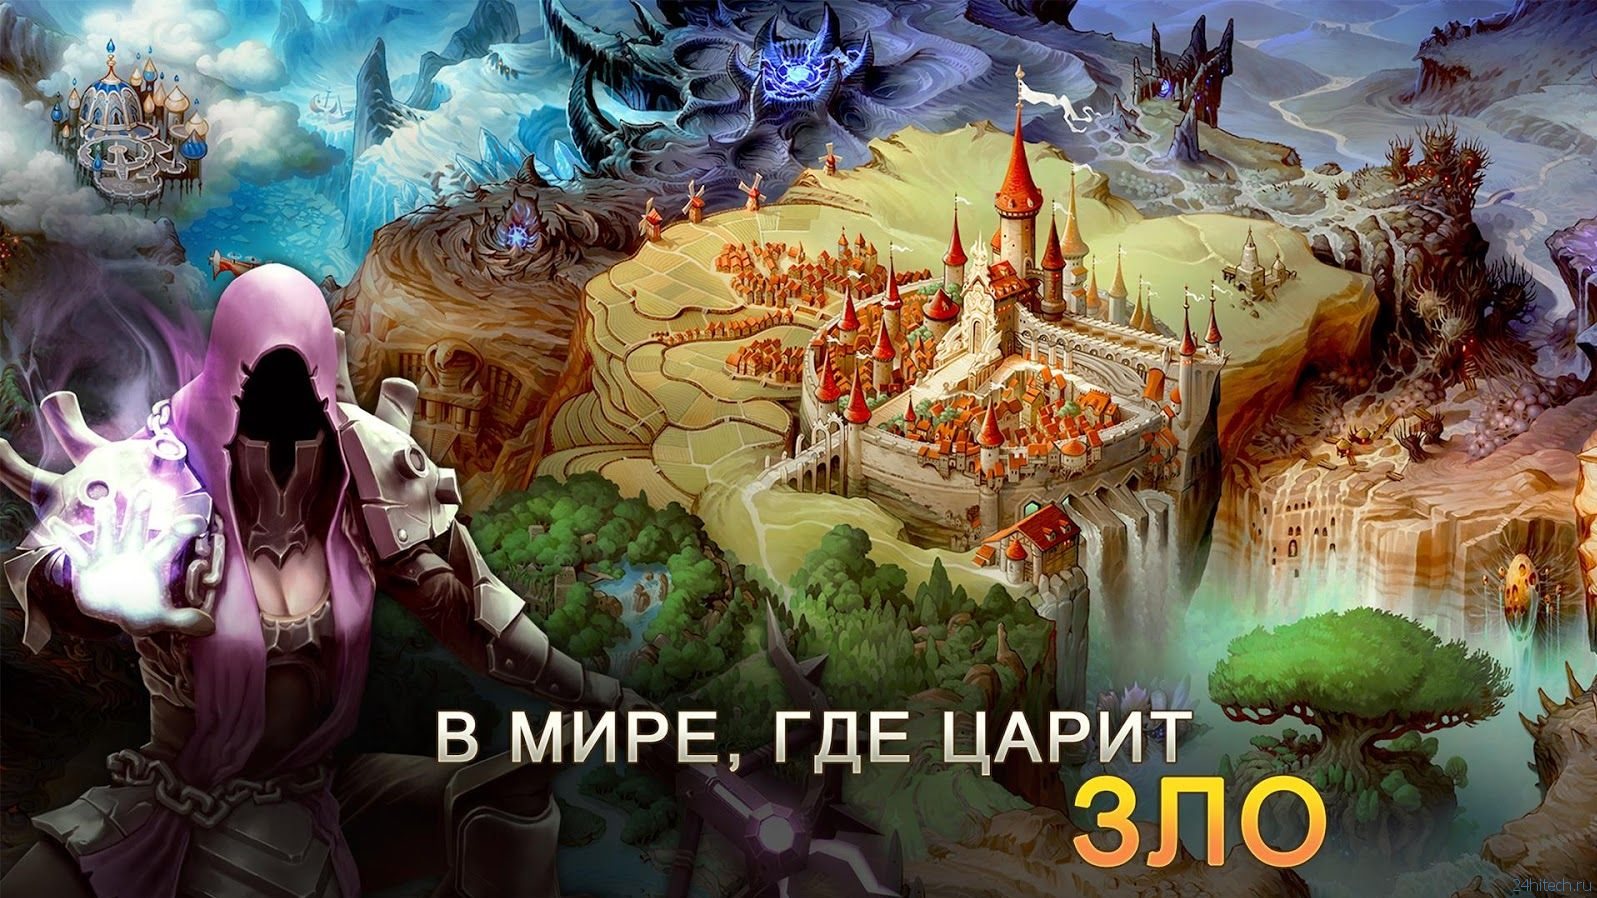 Игра Dungeon Hunter 5 вышла на Windows Phone и Windows в виде универсального приложения